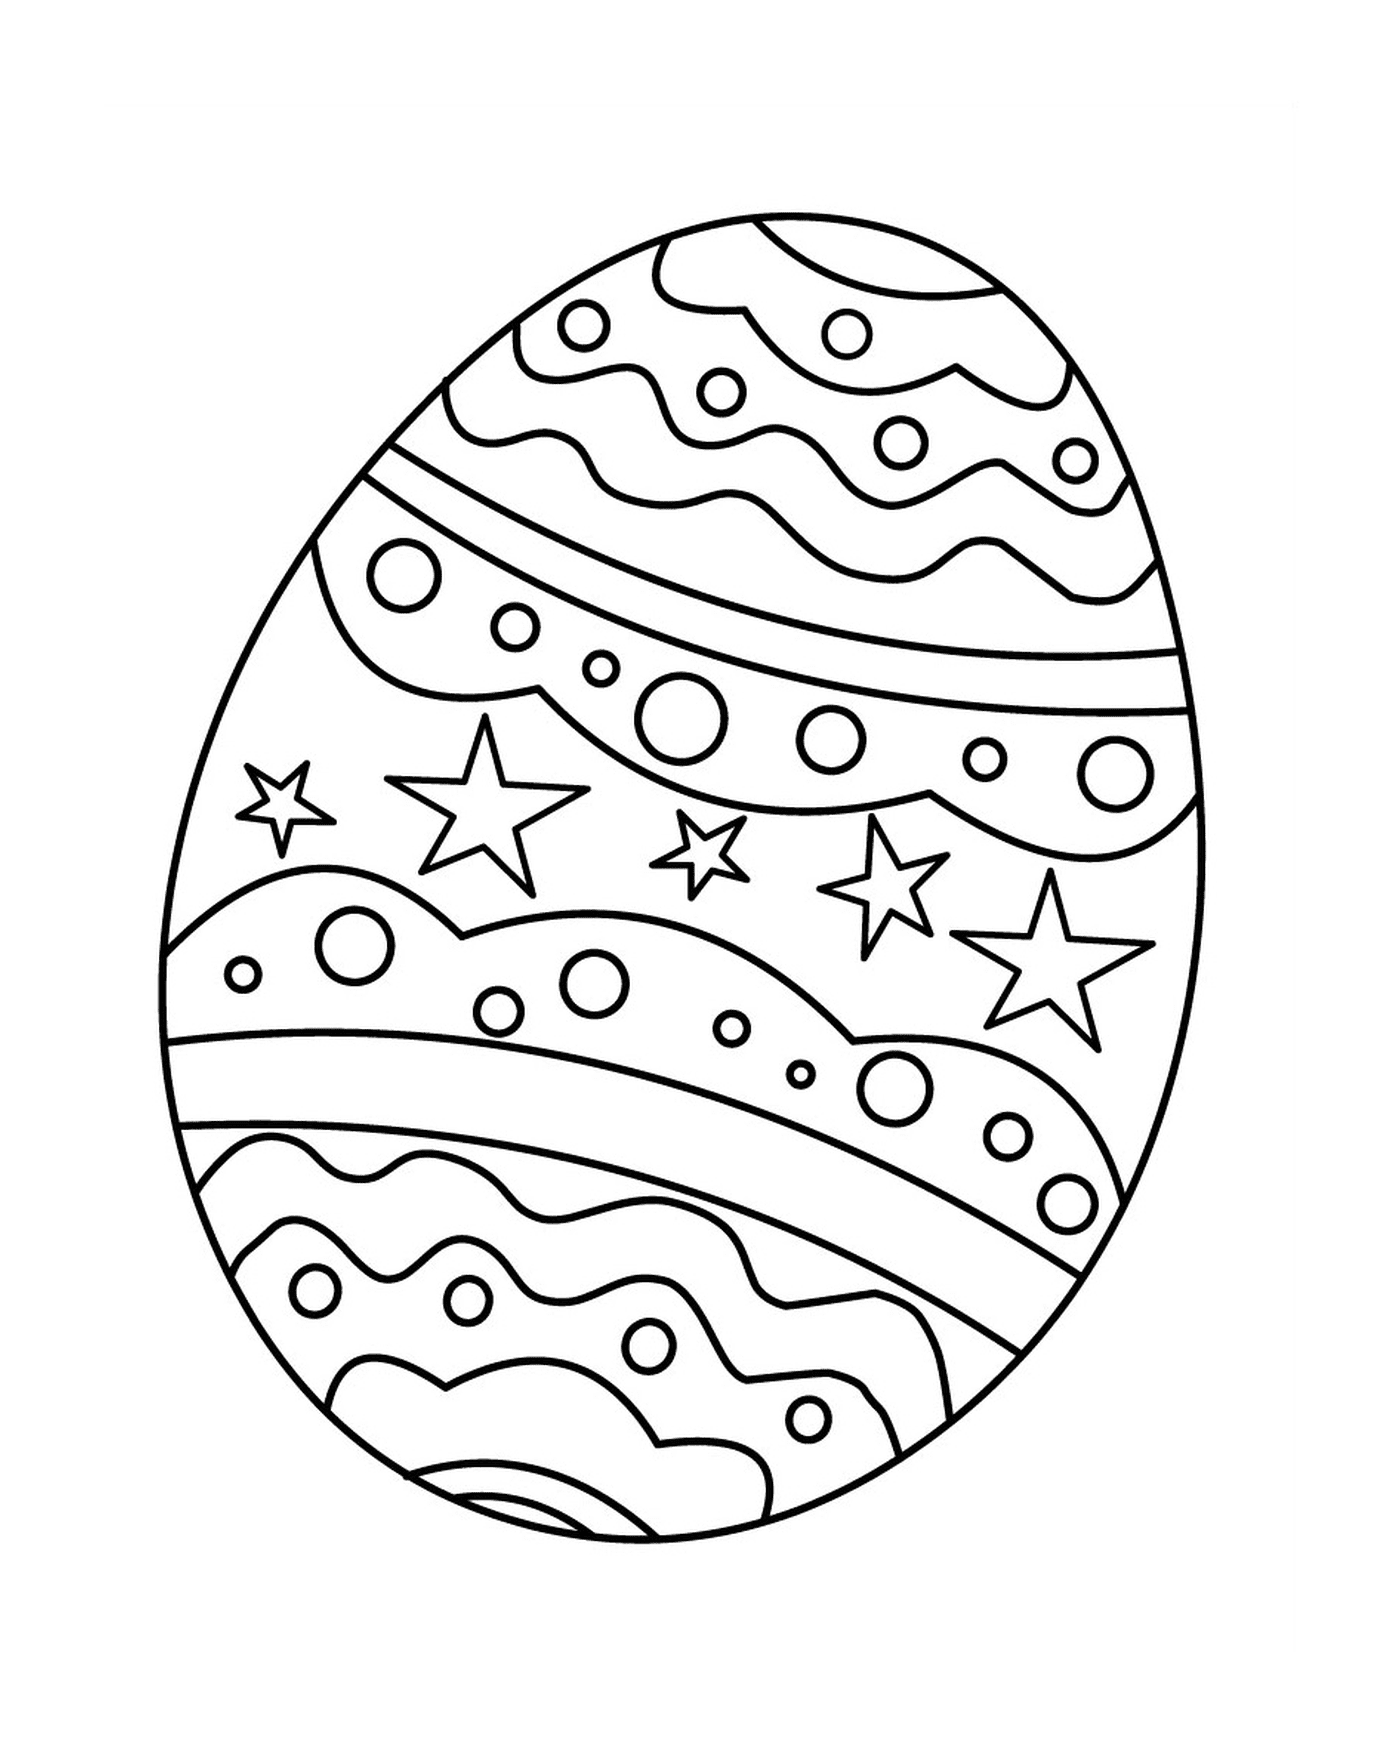  Пасхальное яйцо со звездами 